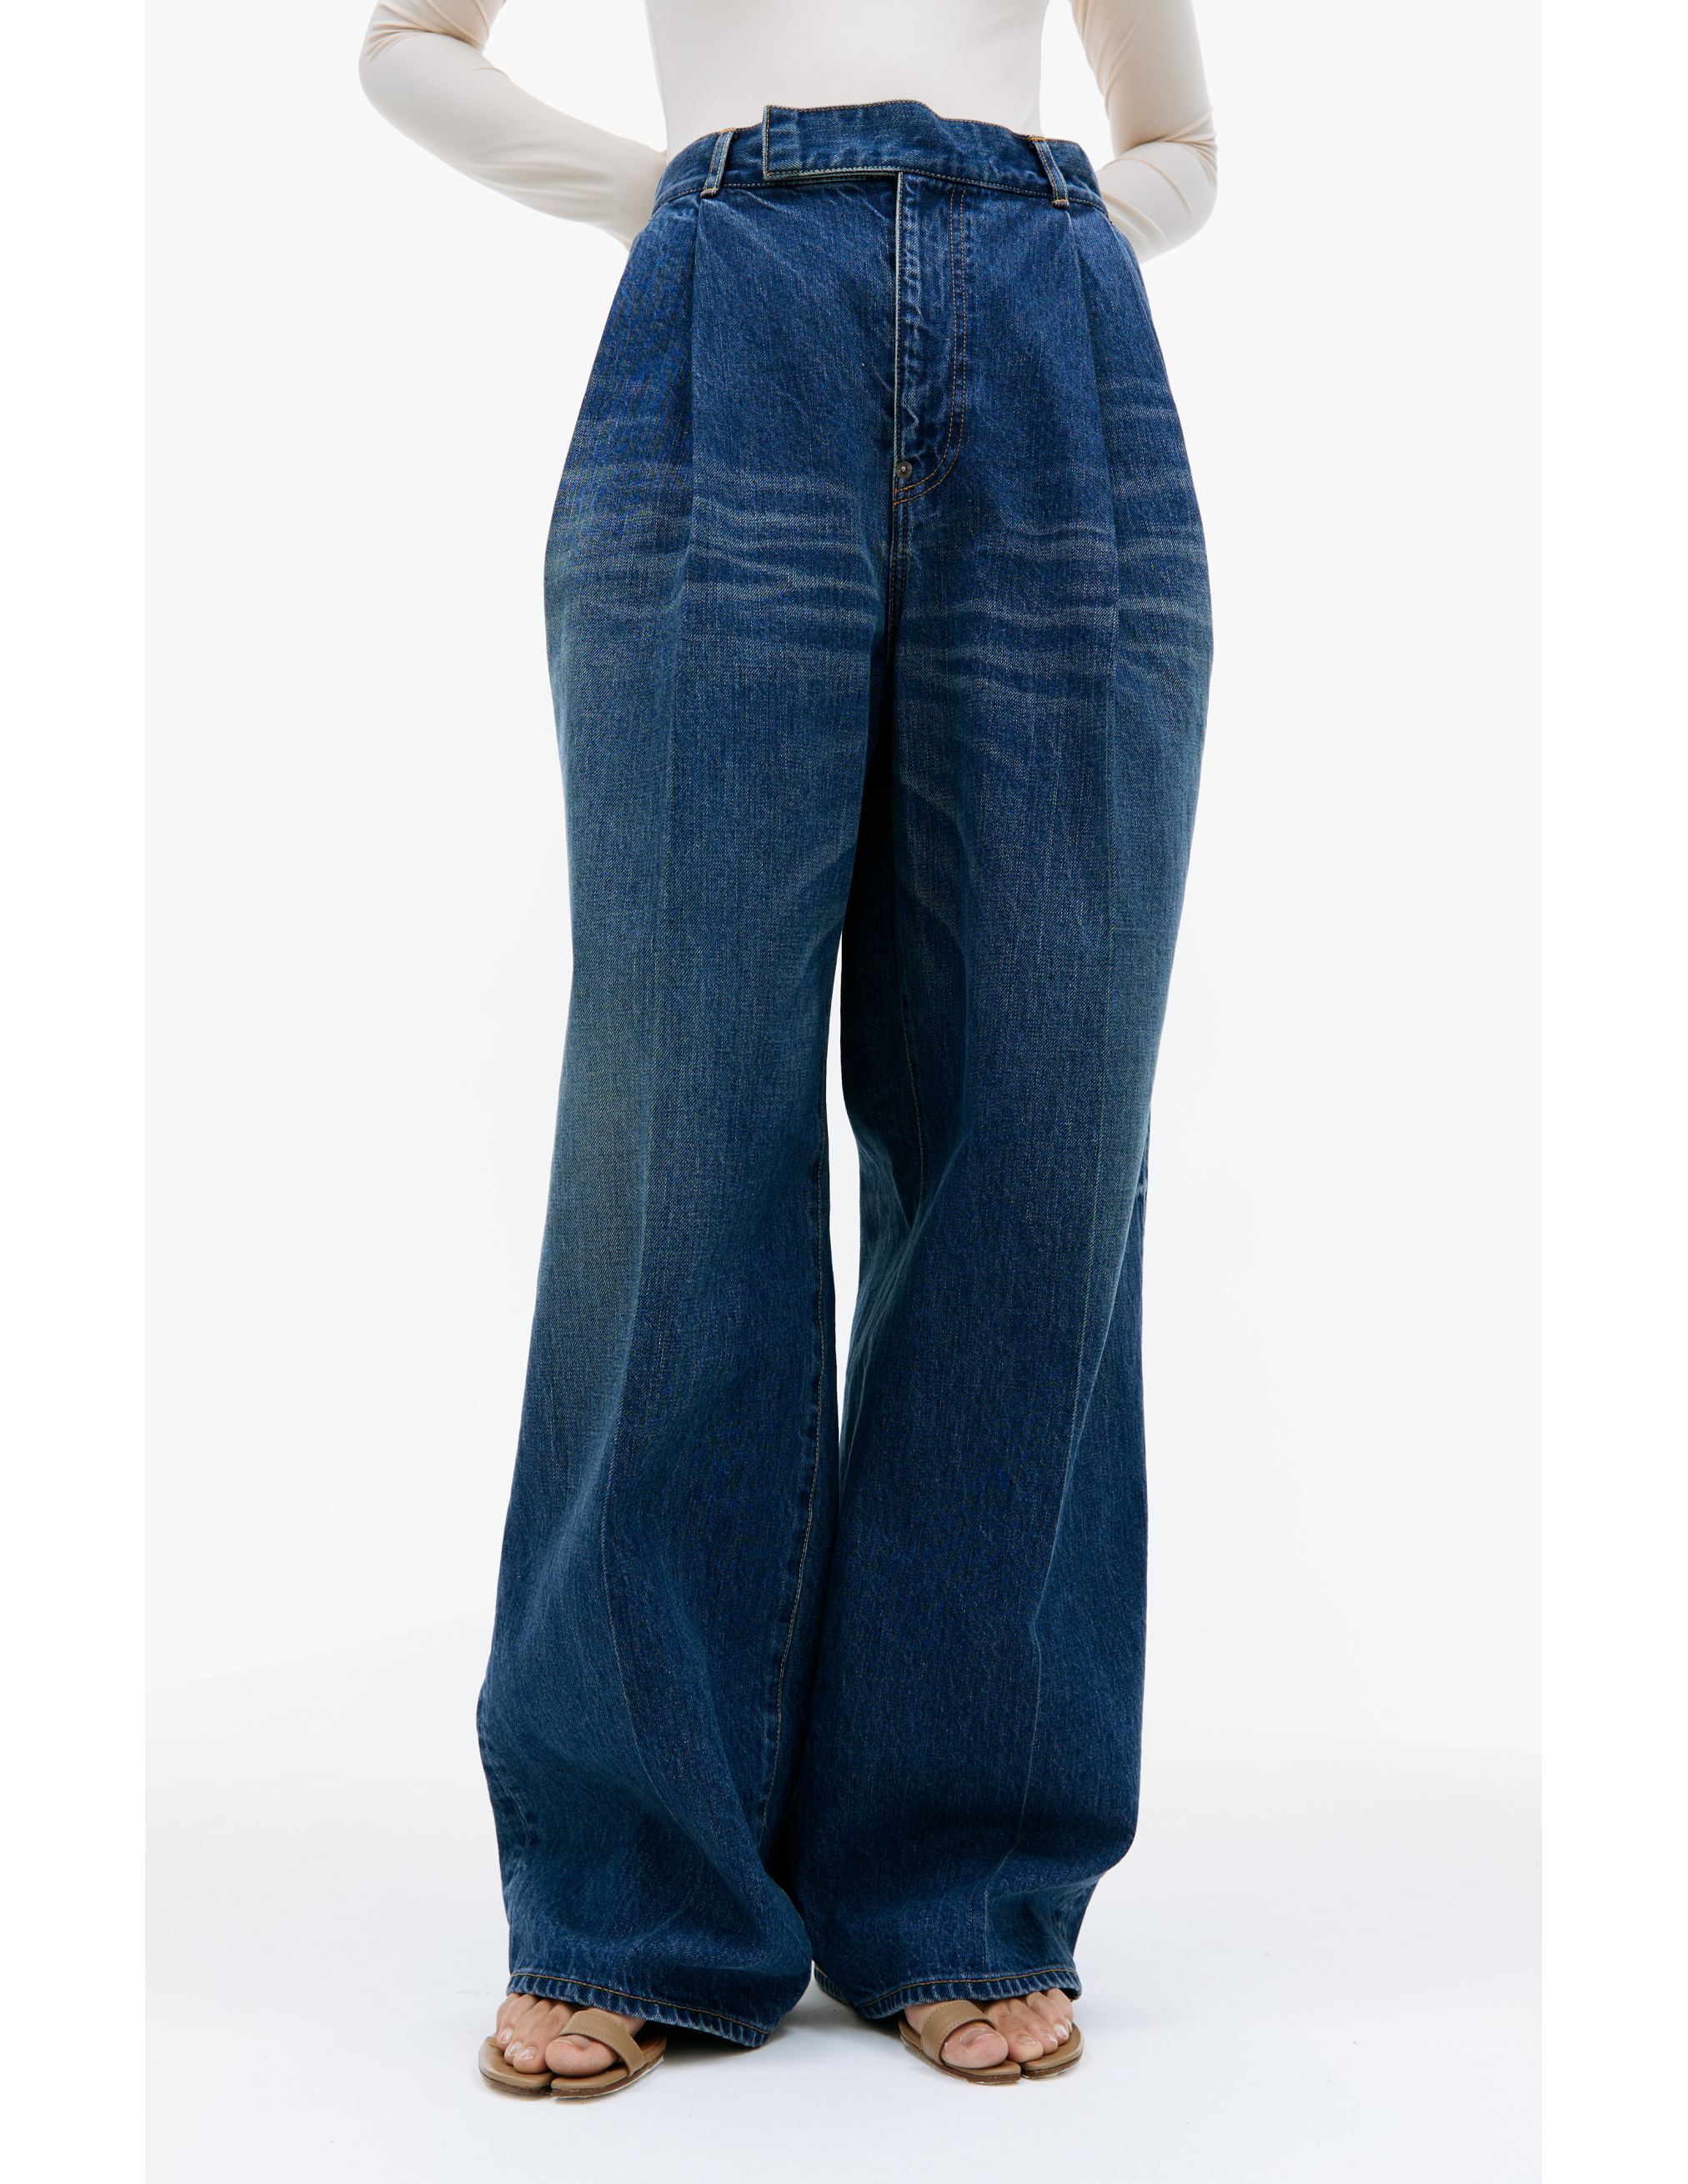 Широкие джинсы с защипами Undercover UC1C1504-2/INDIGO, размер 3 UC1C1504-2/INDIGO - фото 4